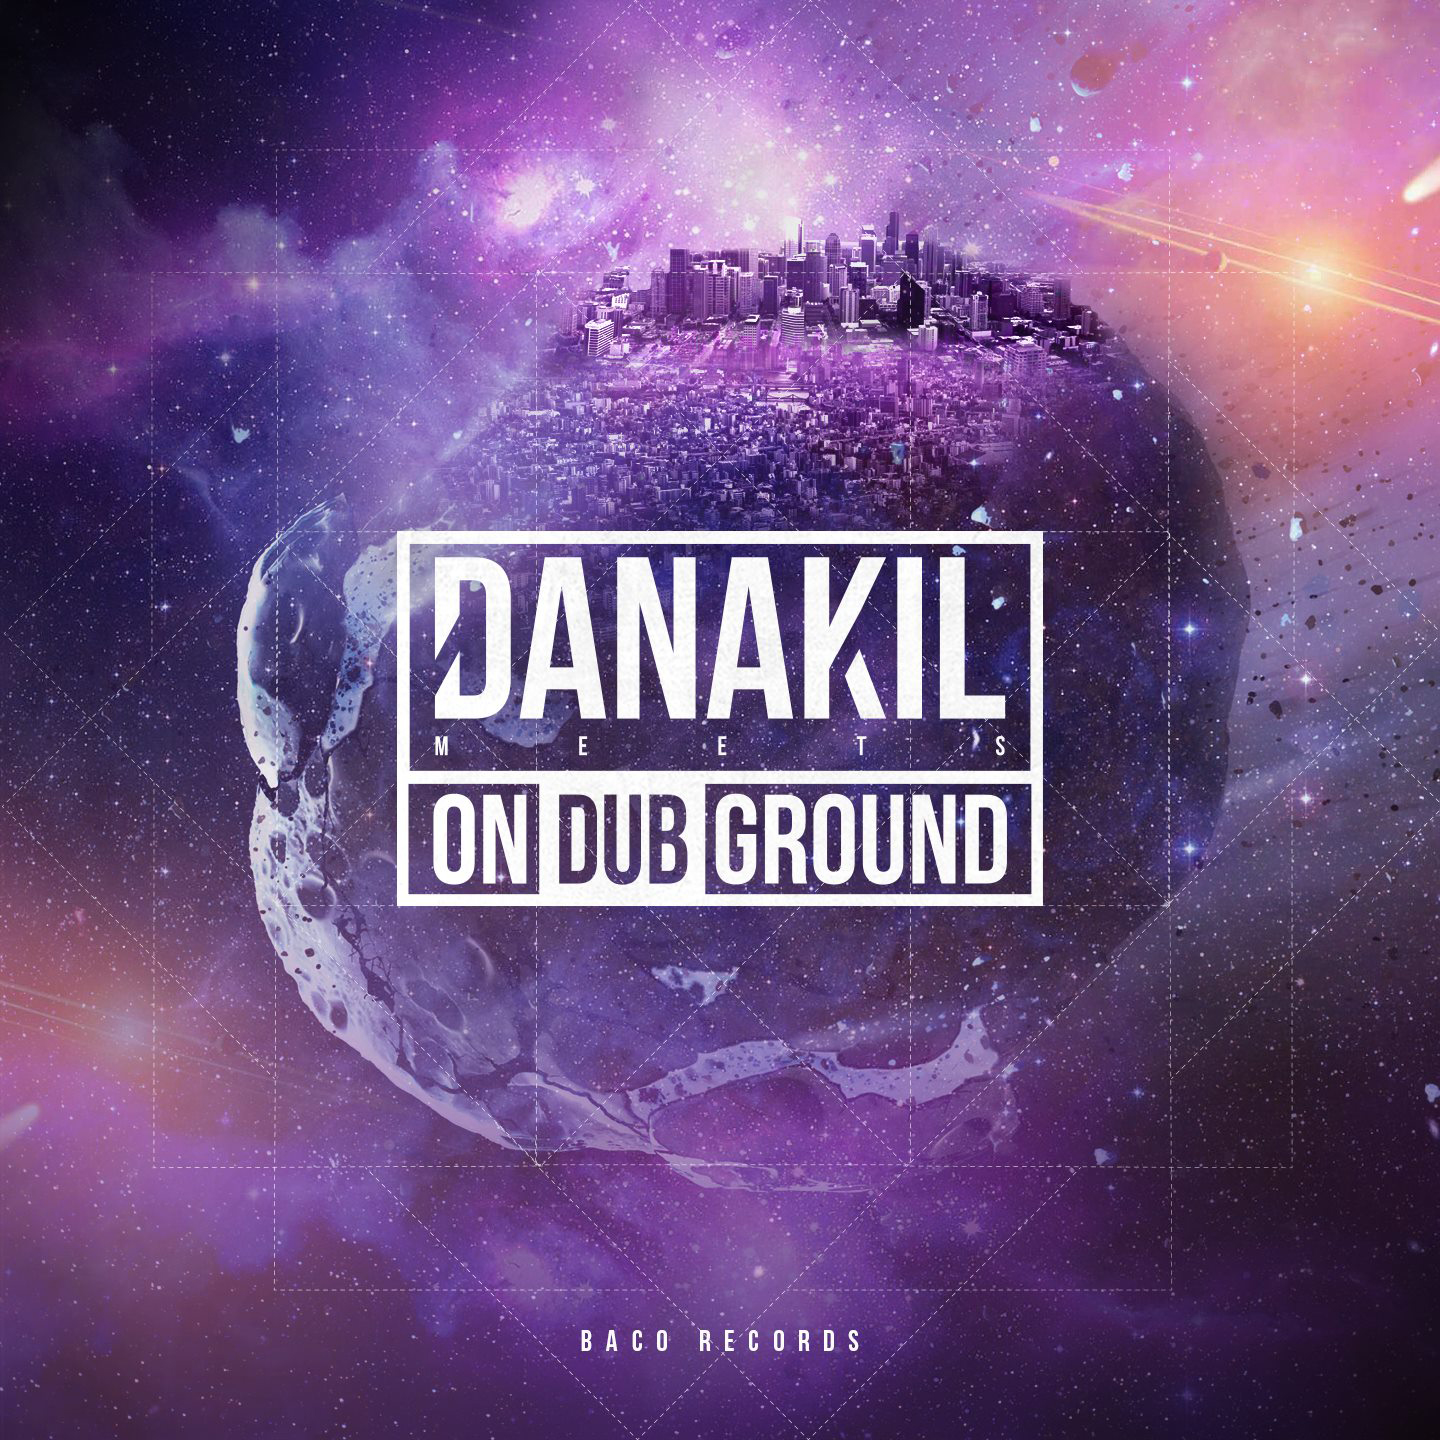 Cover de l'album de Danakil meets Ondubground - Volume 1. Réalisé par Loseou